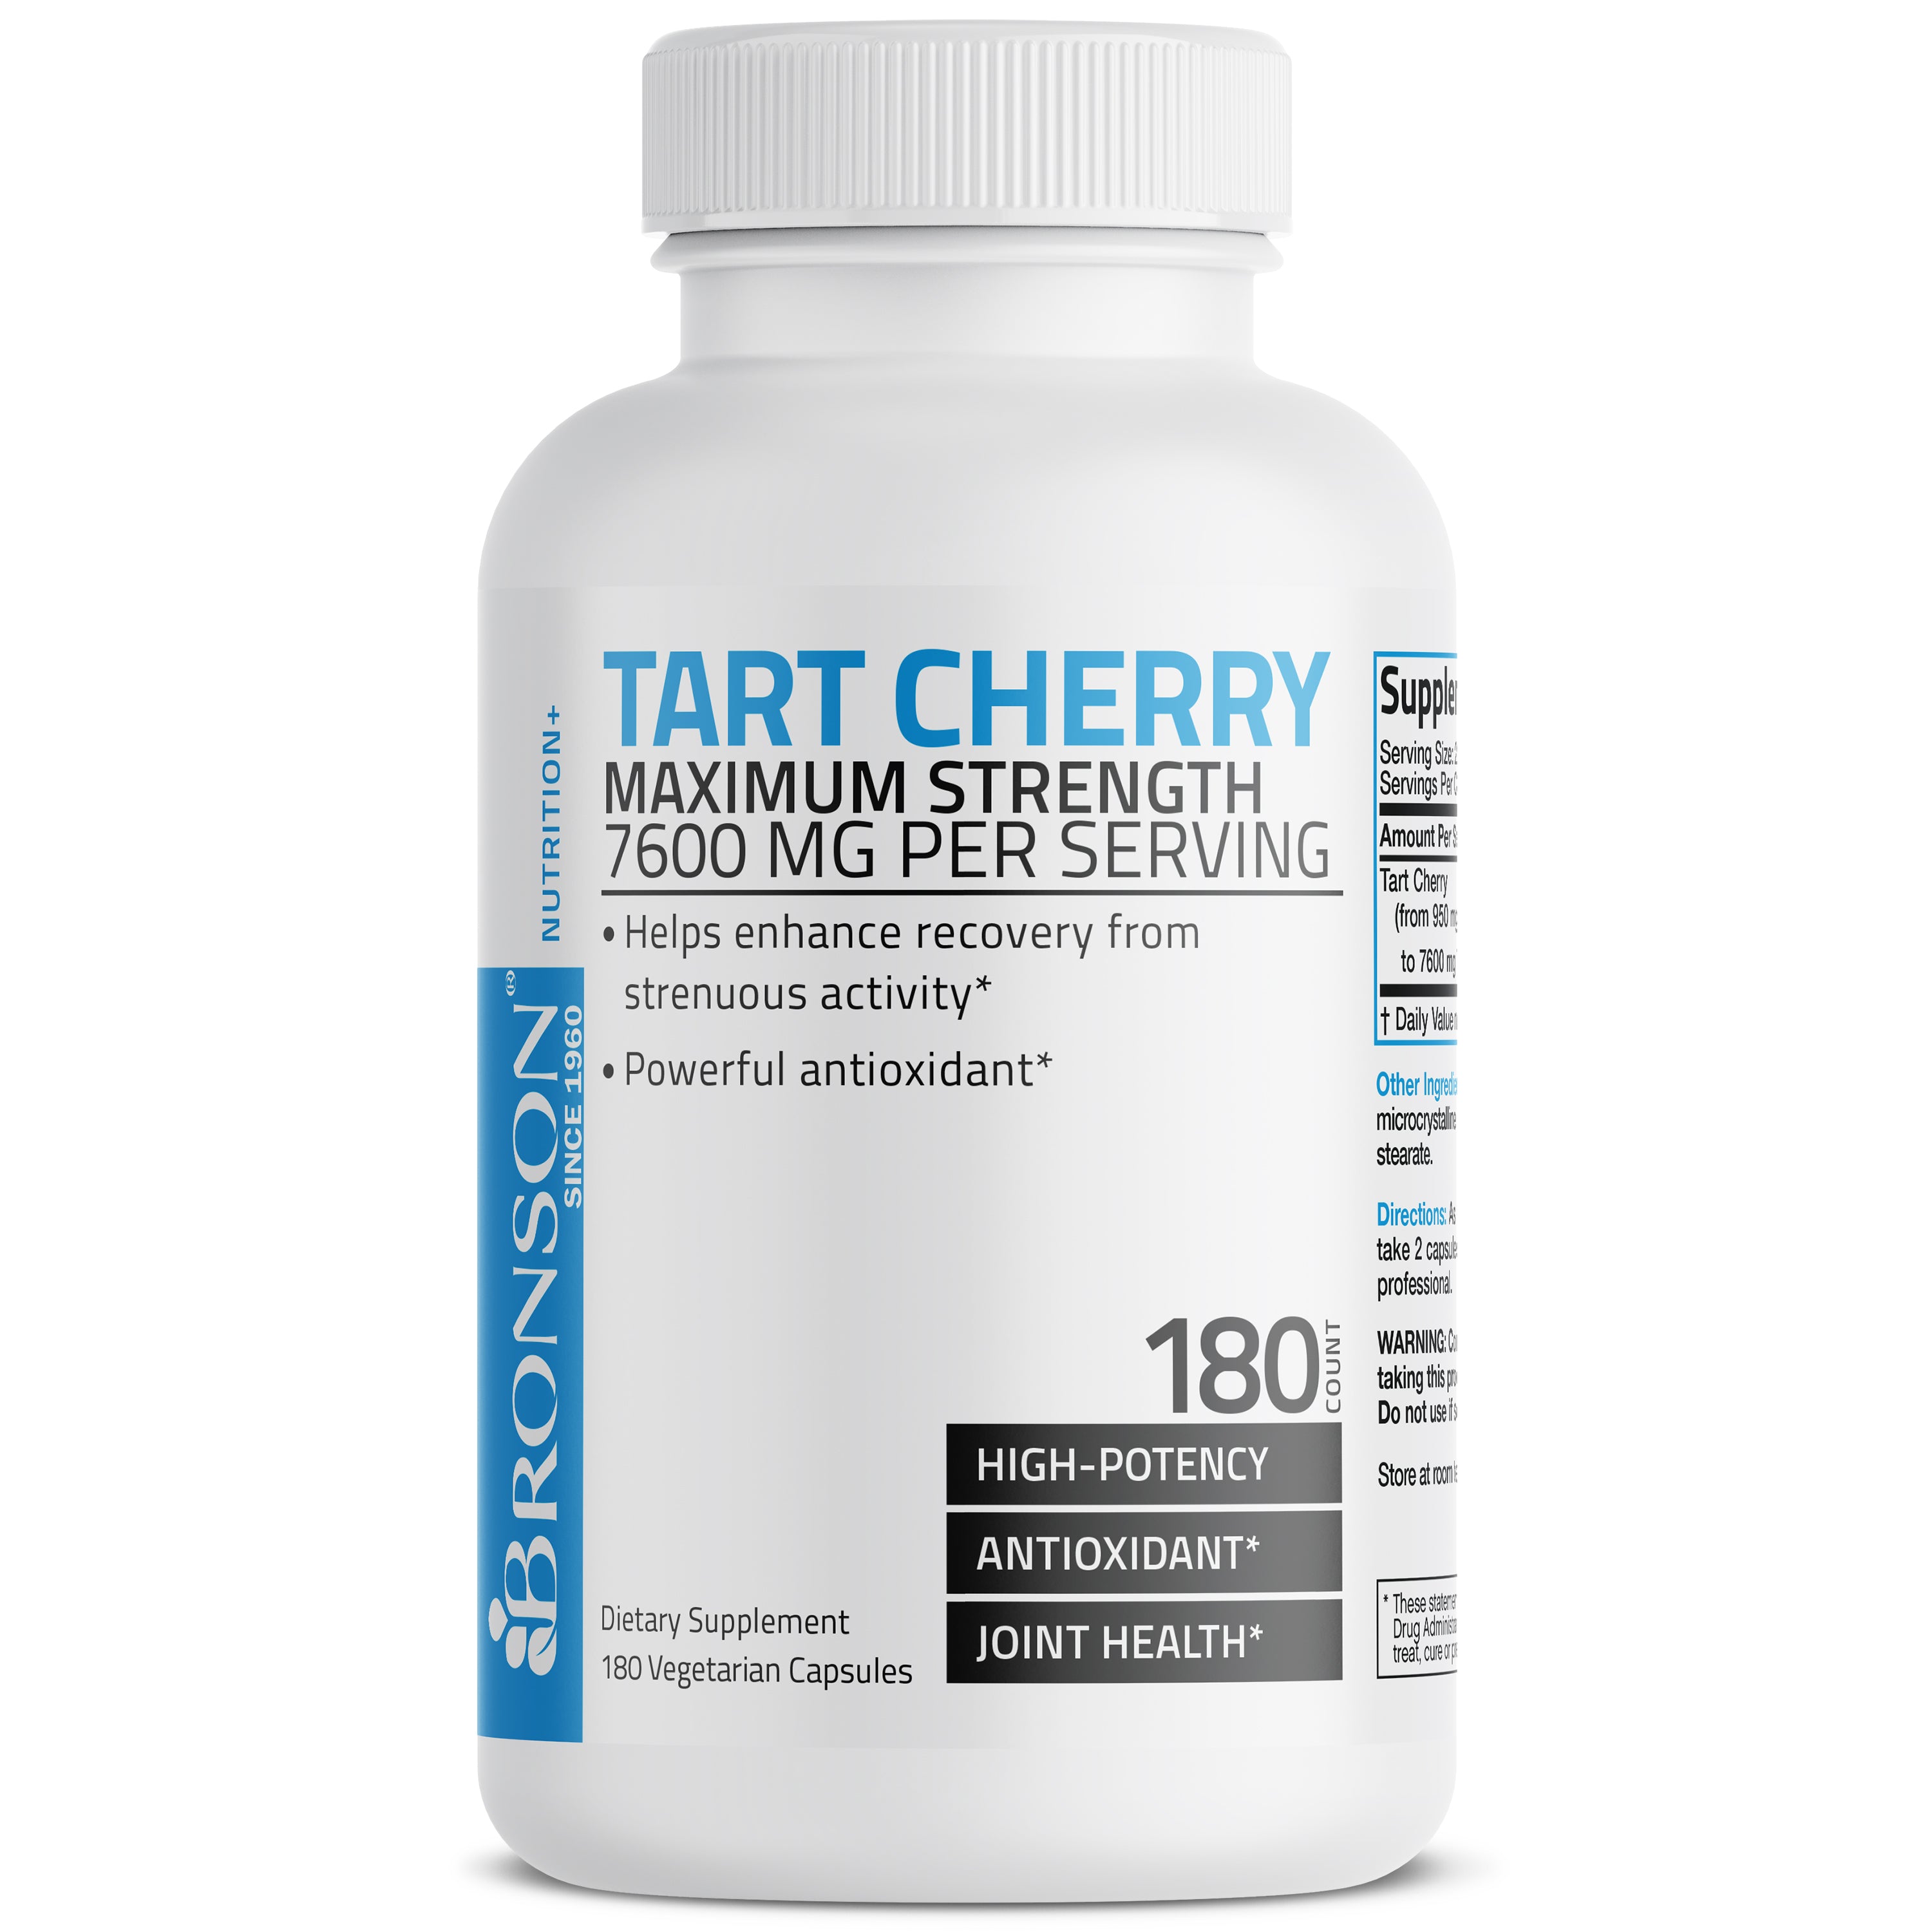 Tart Cherry Extract Maximum Strength - 7,600 mg - 180 Vegetarian Capsules view 4 of 6